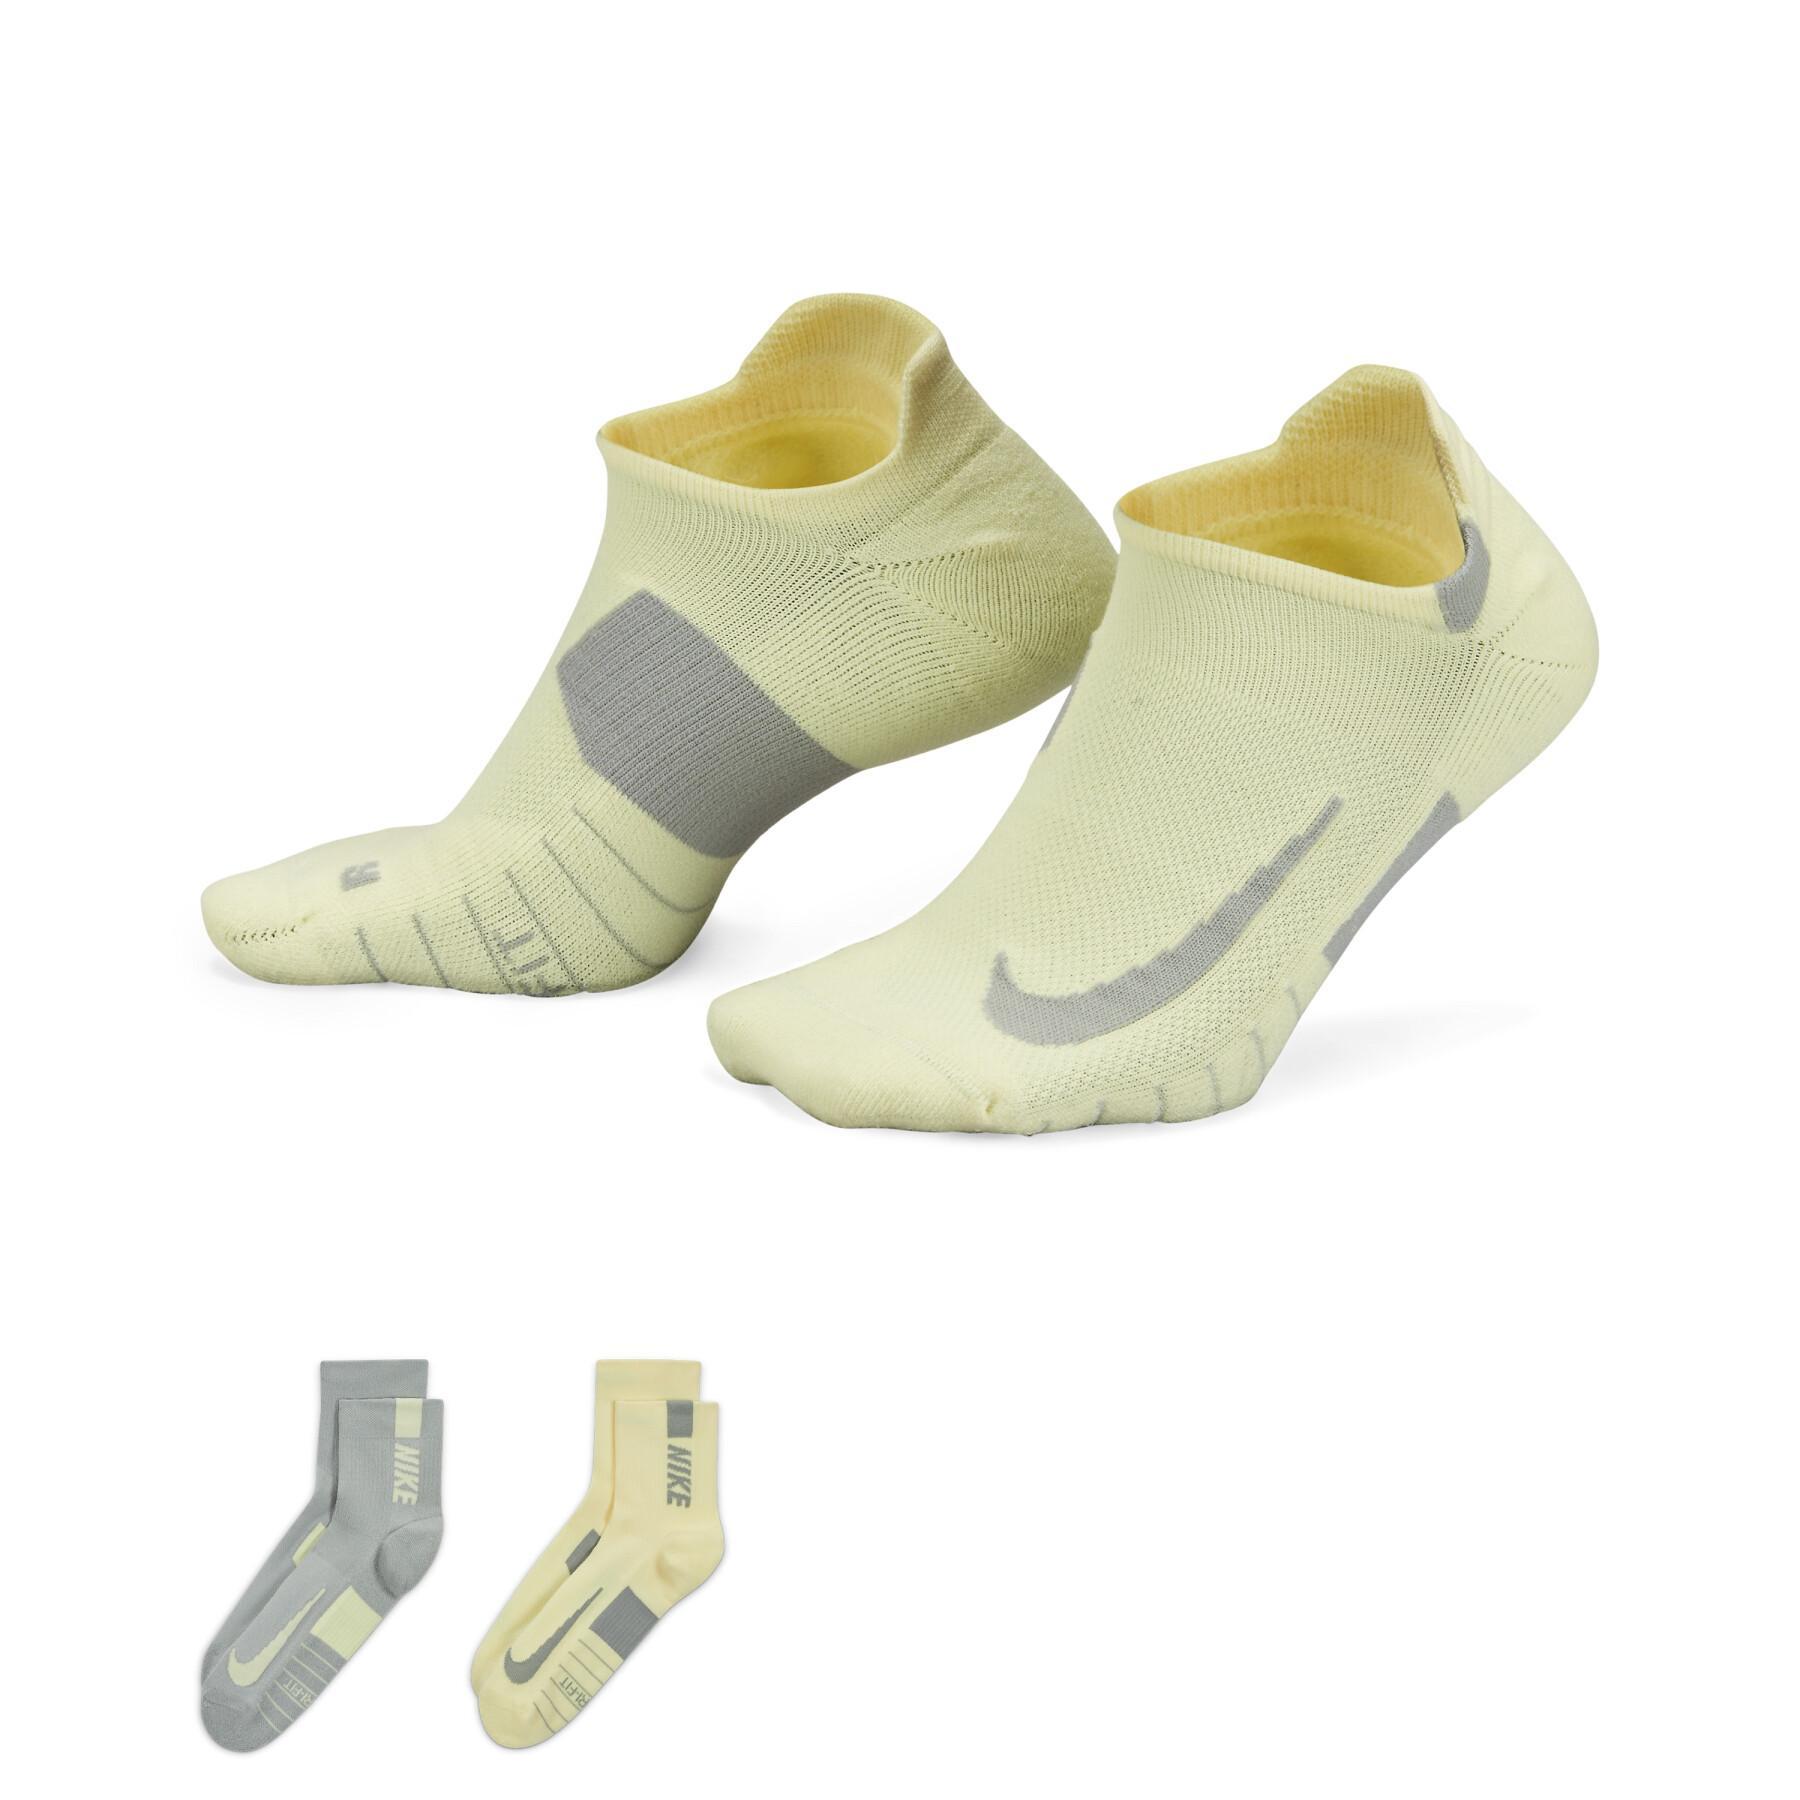 Socken Nike Multiplier